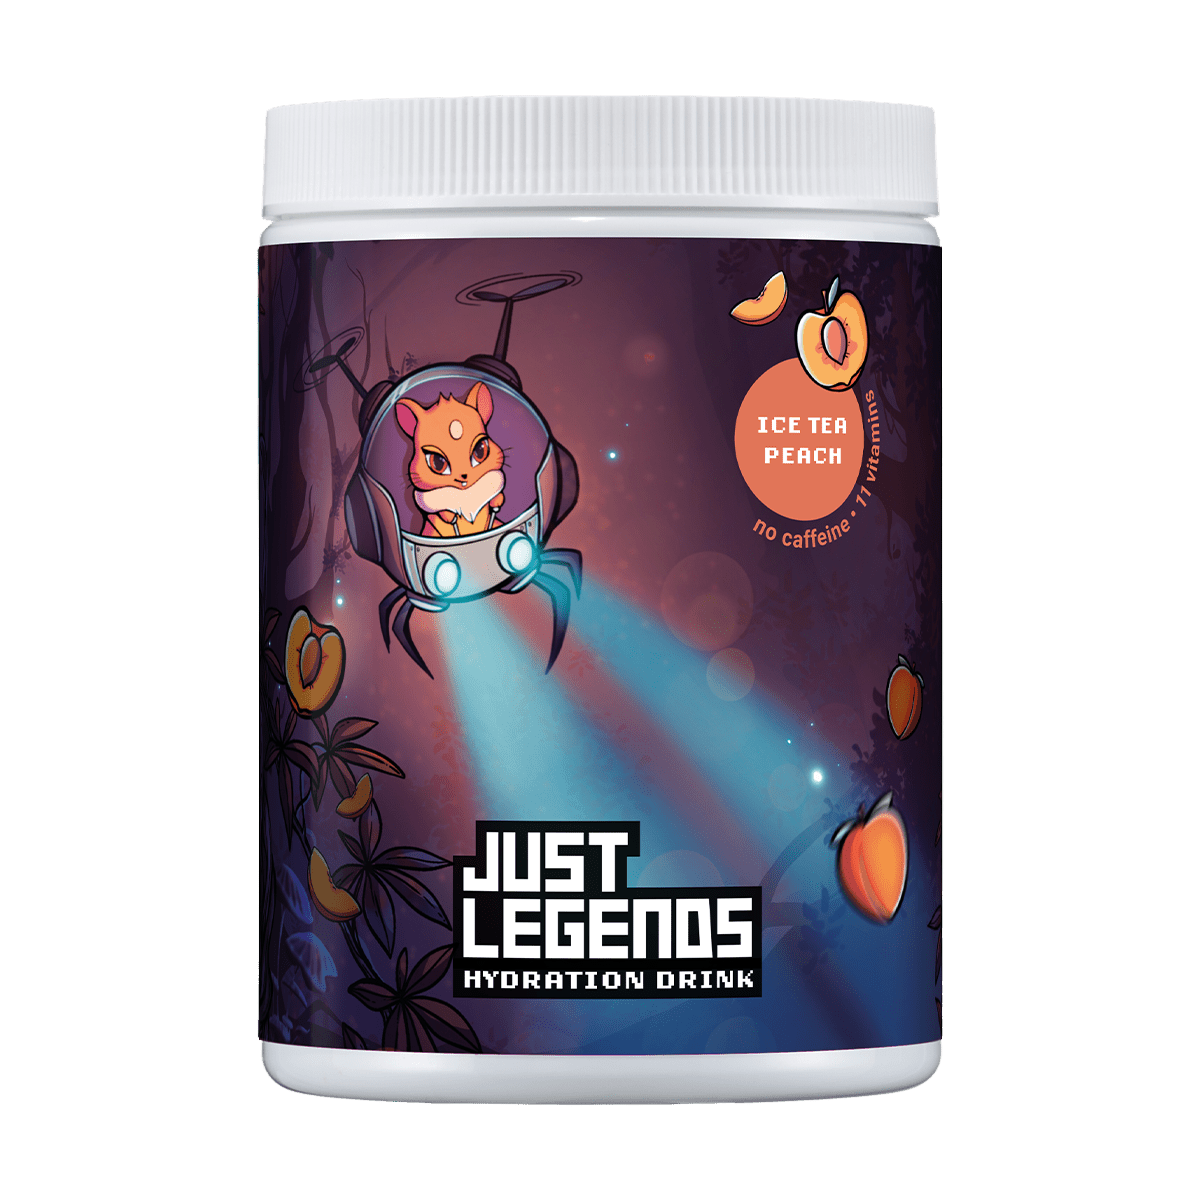 Just Legends Hydration Drink | Funktionaler, veganer Cross Sell auf Pulverbasis ohne Zucker, mit wenig Kalorien, vielen Vitaminen und natürlichen Aromen.